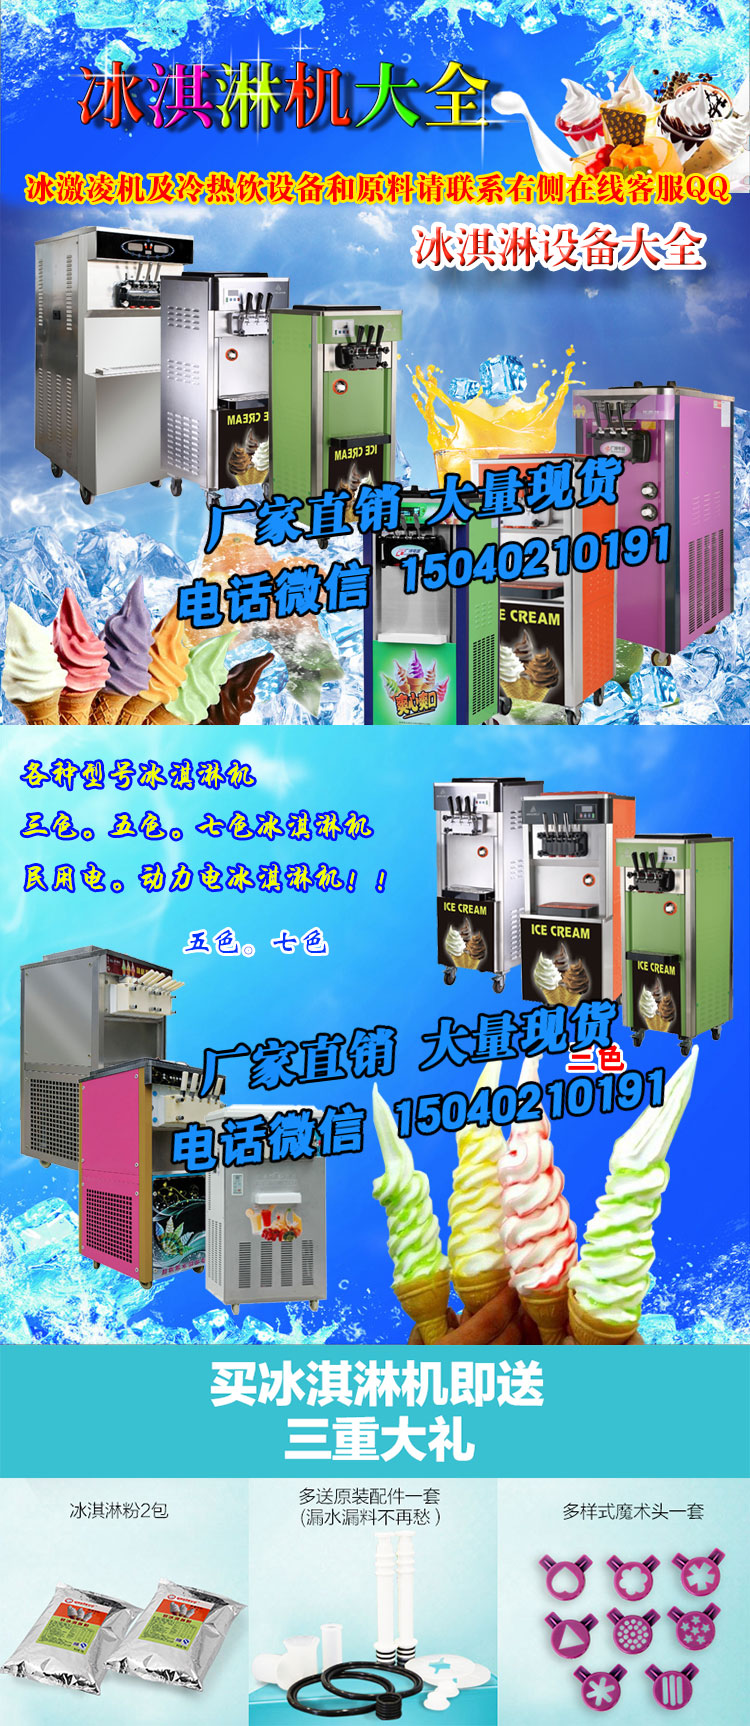 供应冰激凌机 冰淇淋机 厂家直销冰淇淋机图片